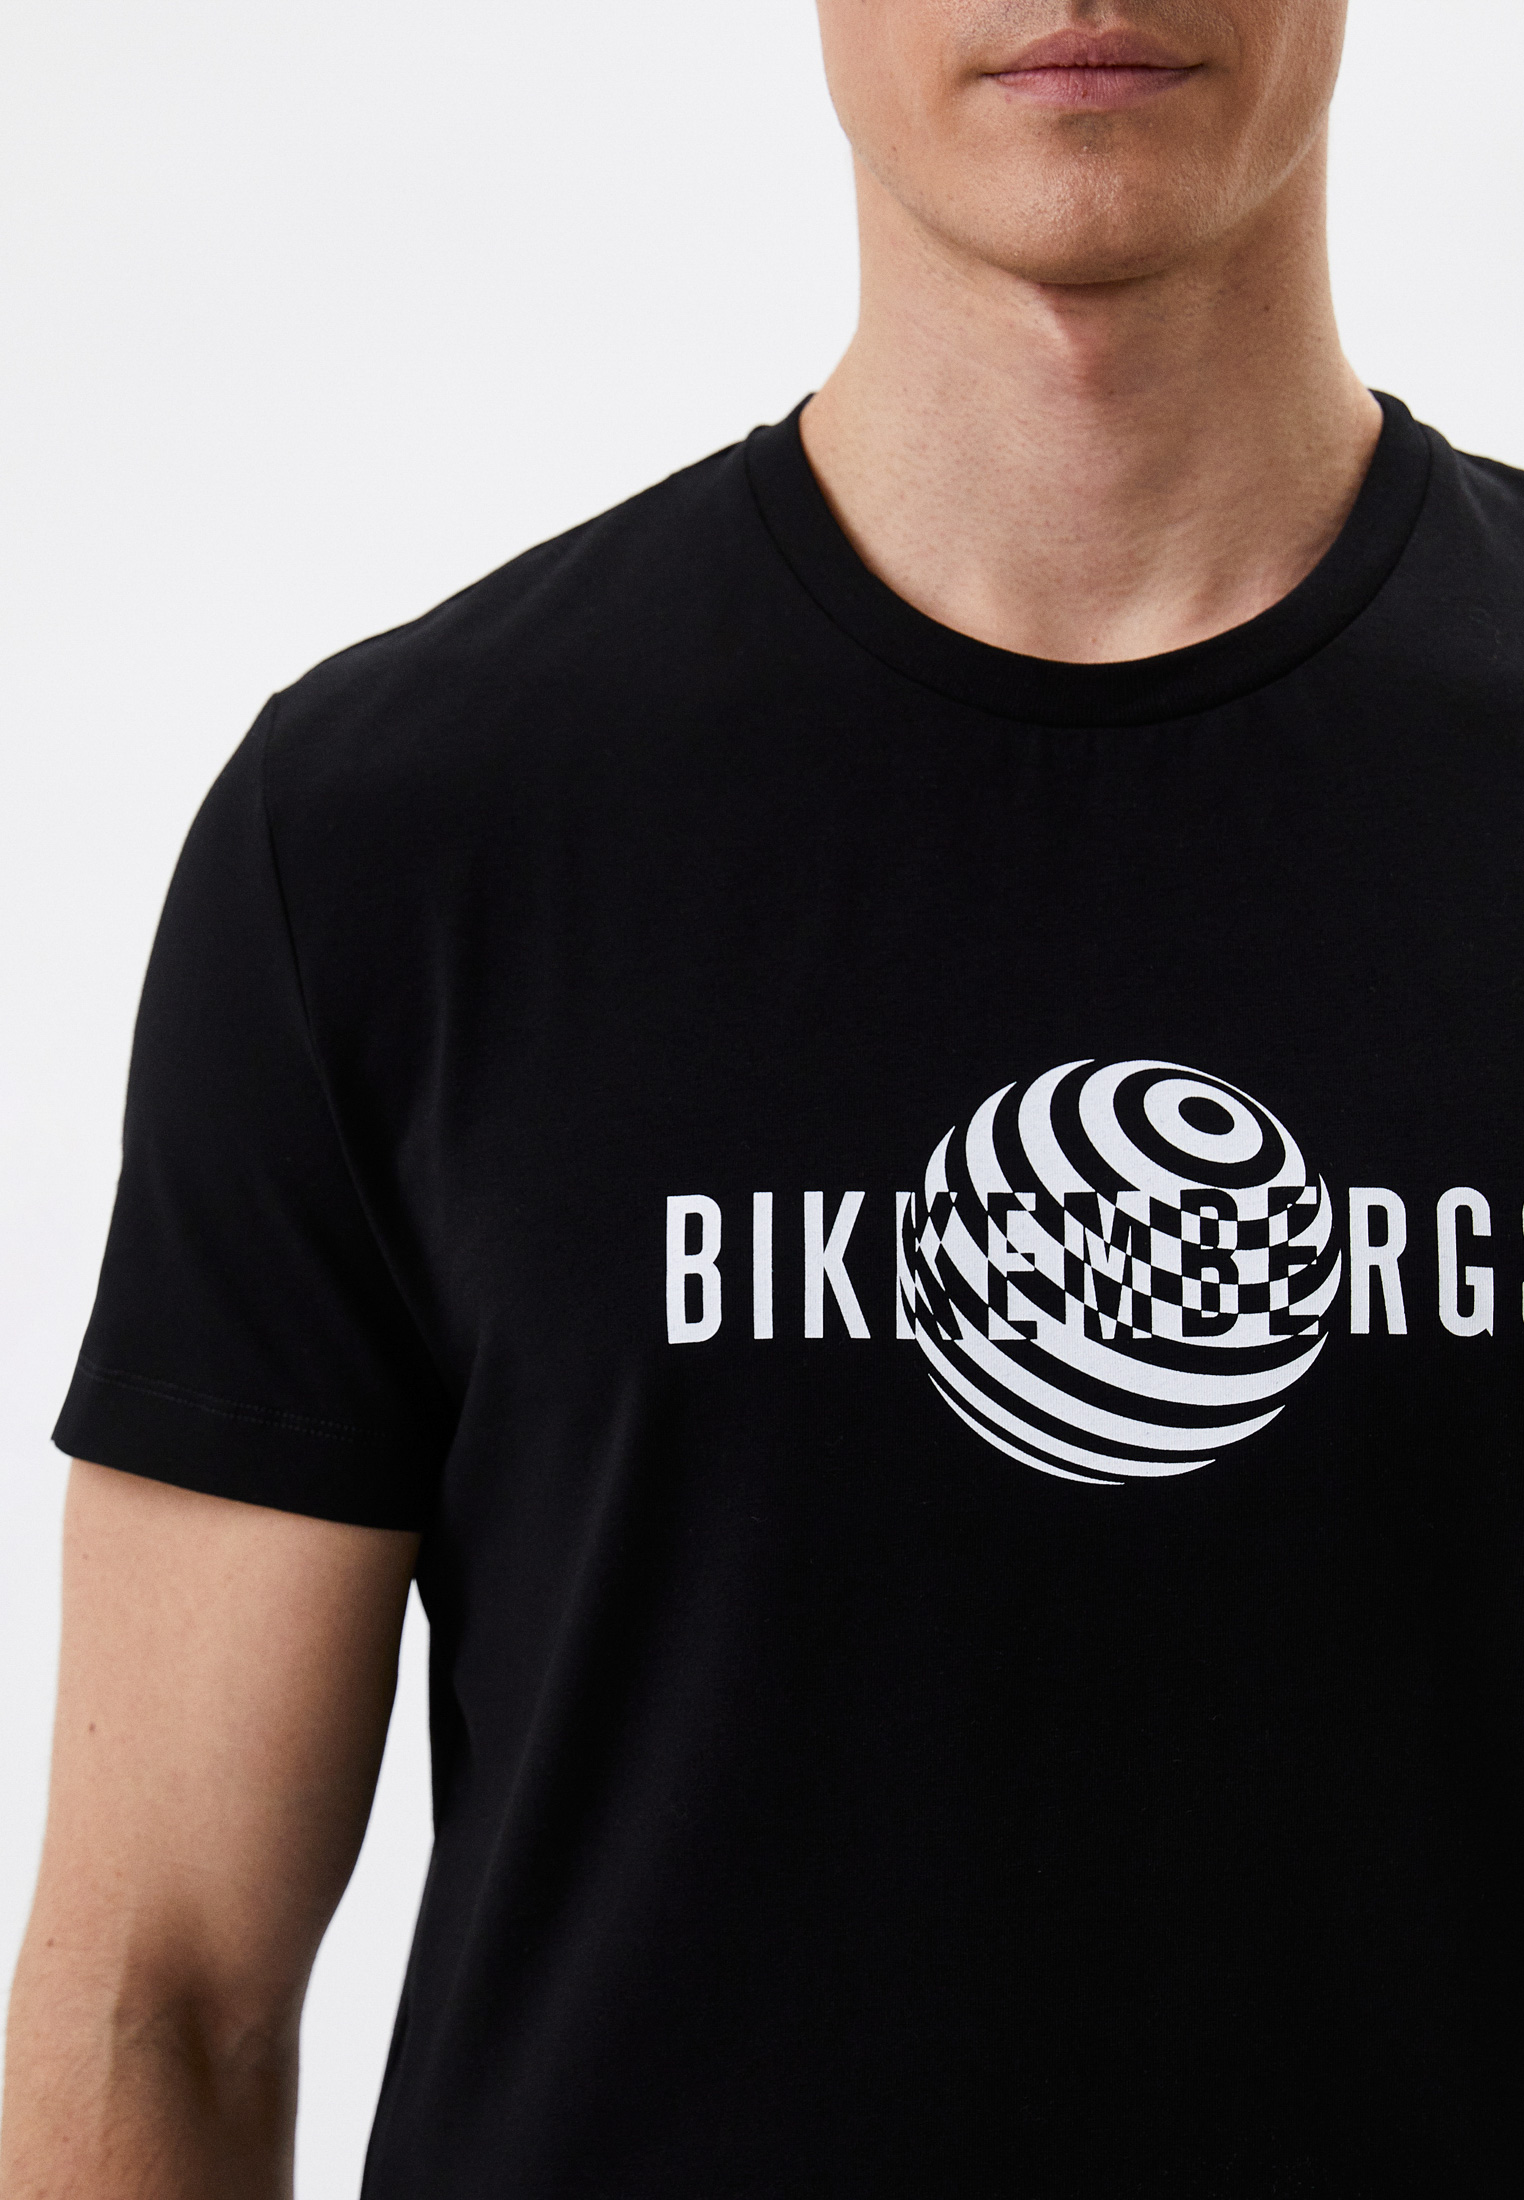 Мужская футболка Bikkembergs (Биккембергс) C 4 101 1H E 2359: изображение 4